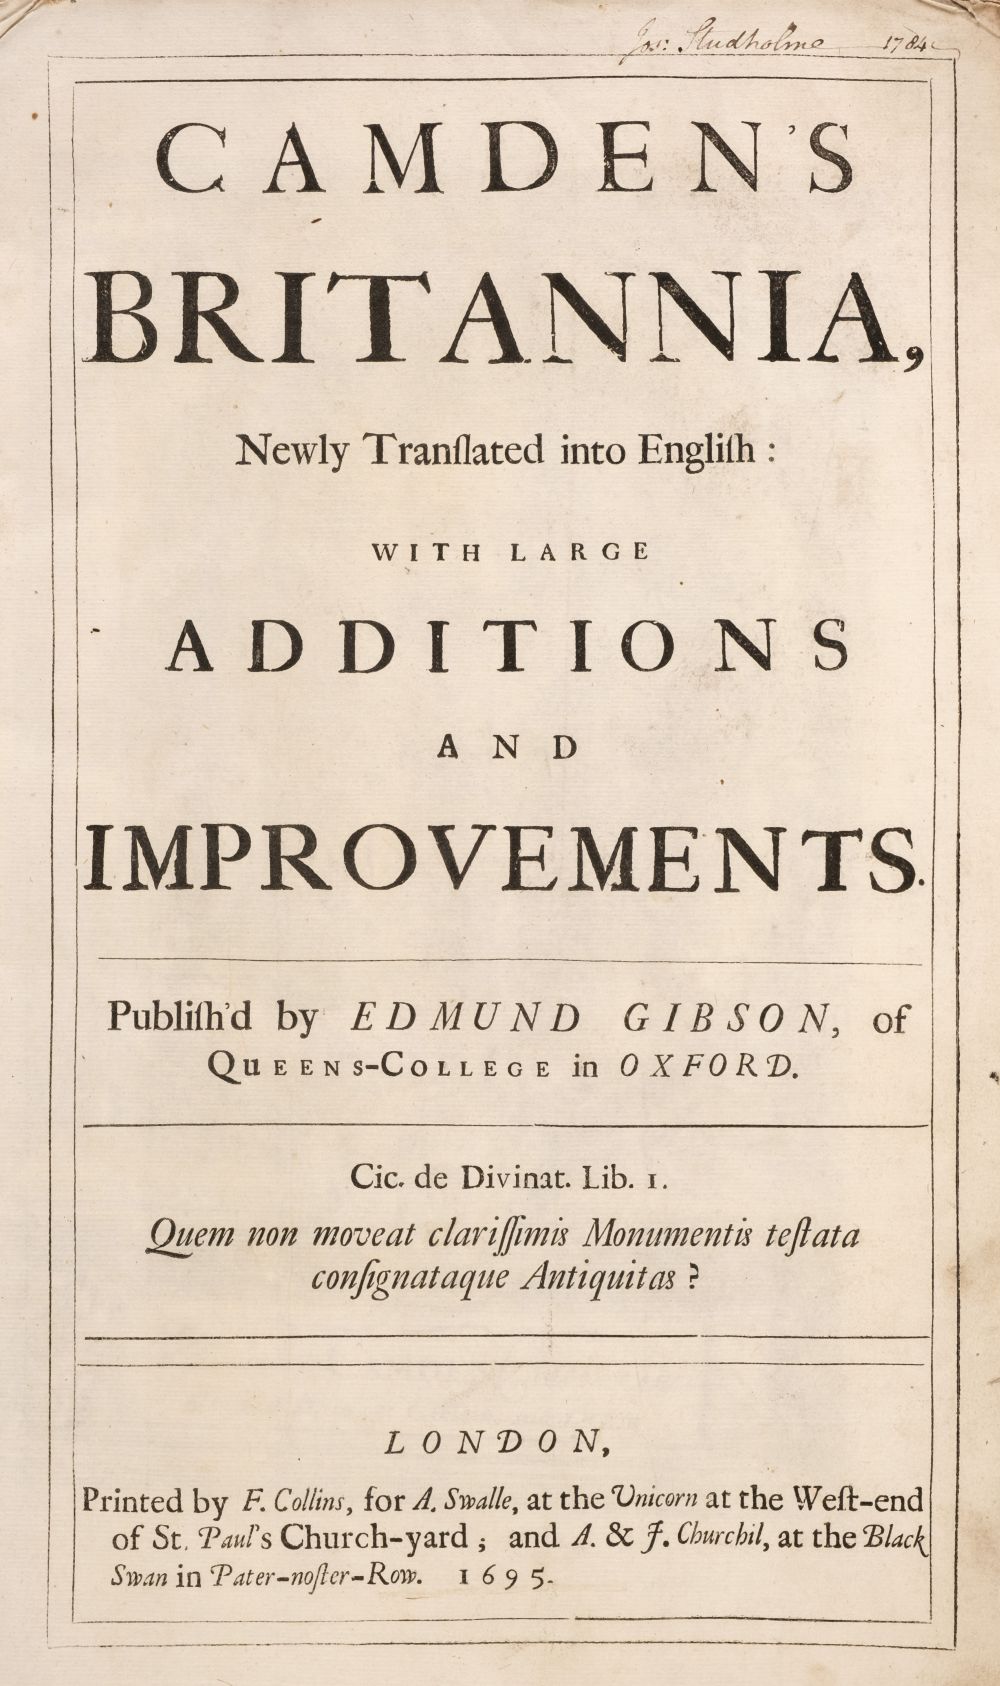 Camden (William). Britannia, London: F. Collins, 1695